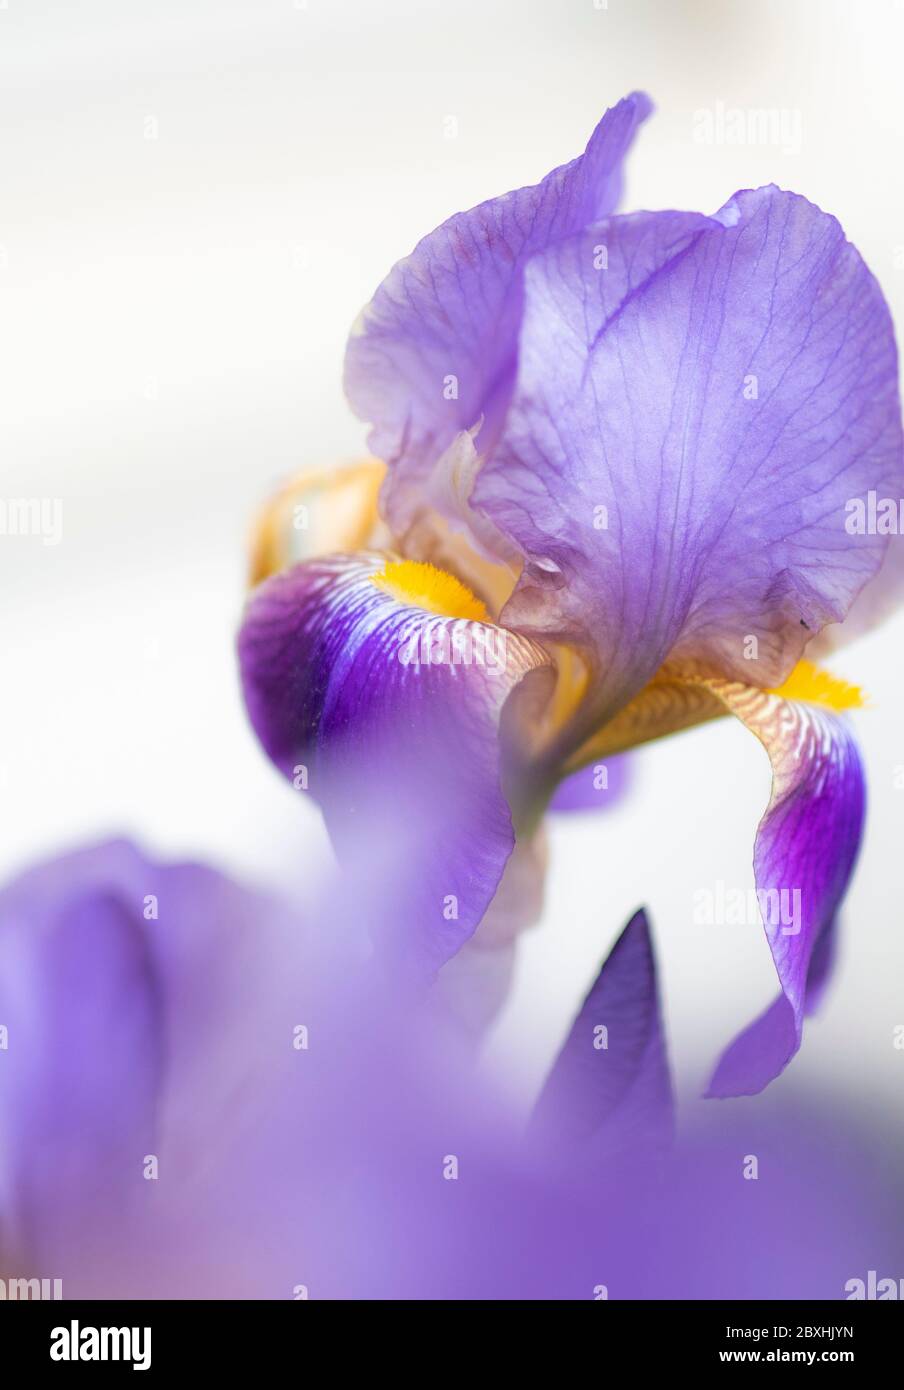 Iris violet avec une grande ouverture pour un look rêveur Banque D'Images